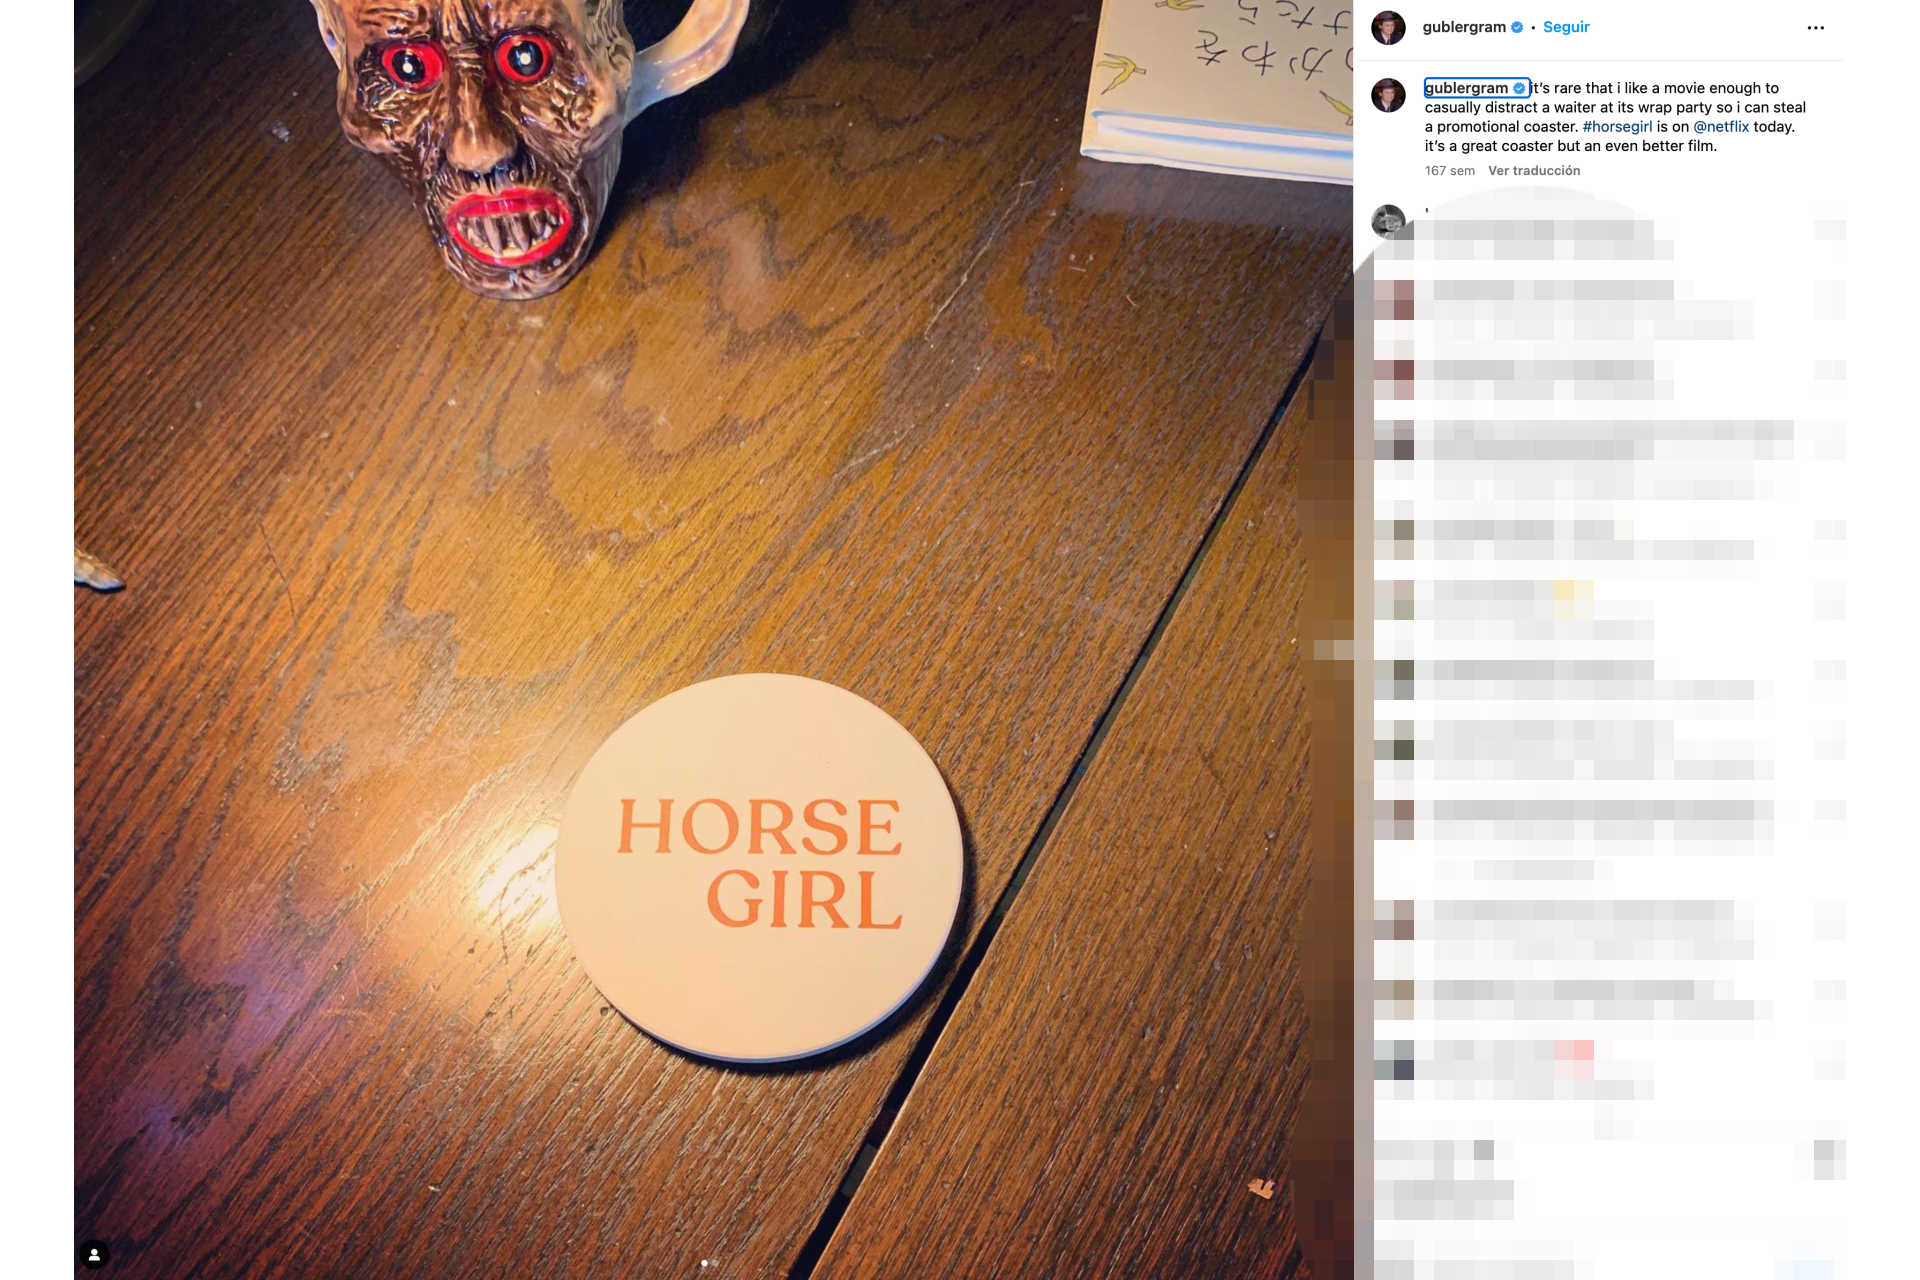 <p>L'attore si è dimostrato particolarmente entusiasta del film, tanto da portare via un sottobicchiere con la scritta "Horse Girl" alla festa di fine riprese e condividere la foto su Instagram.</p> <p>Foto: Instagram - @gublergram</p>